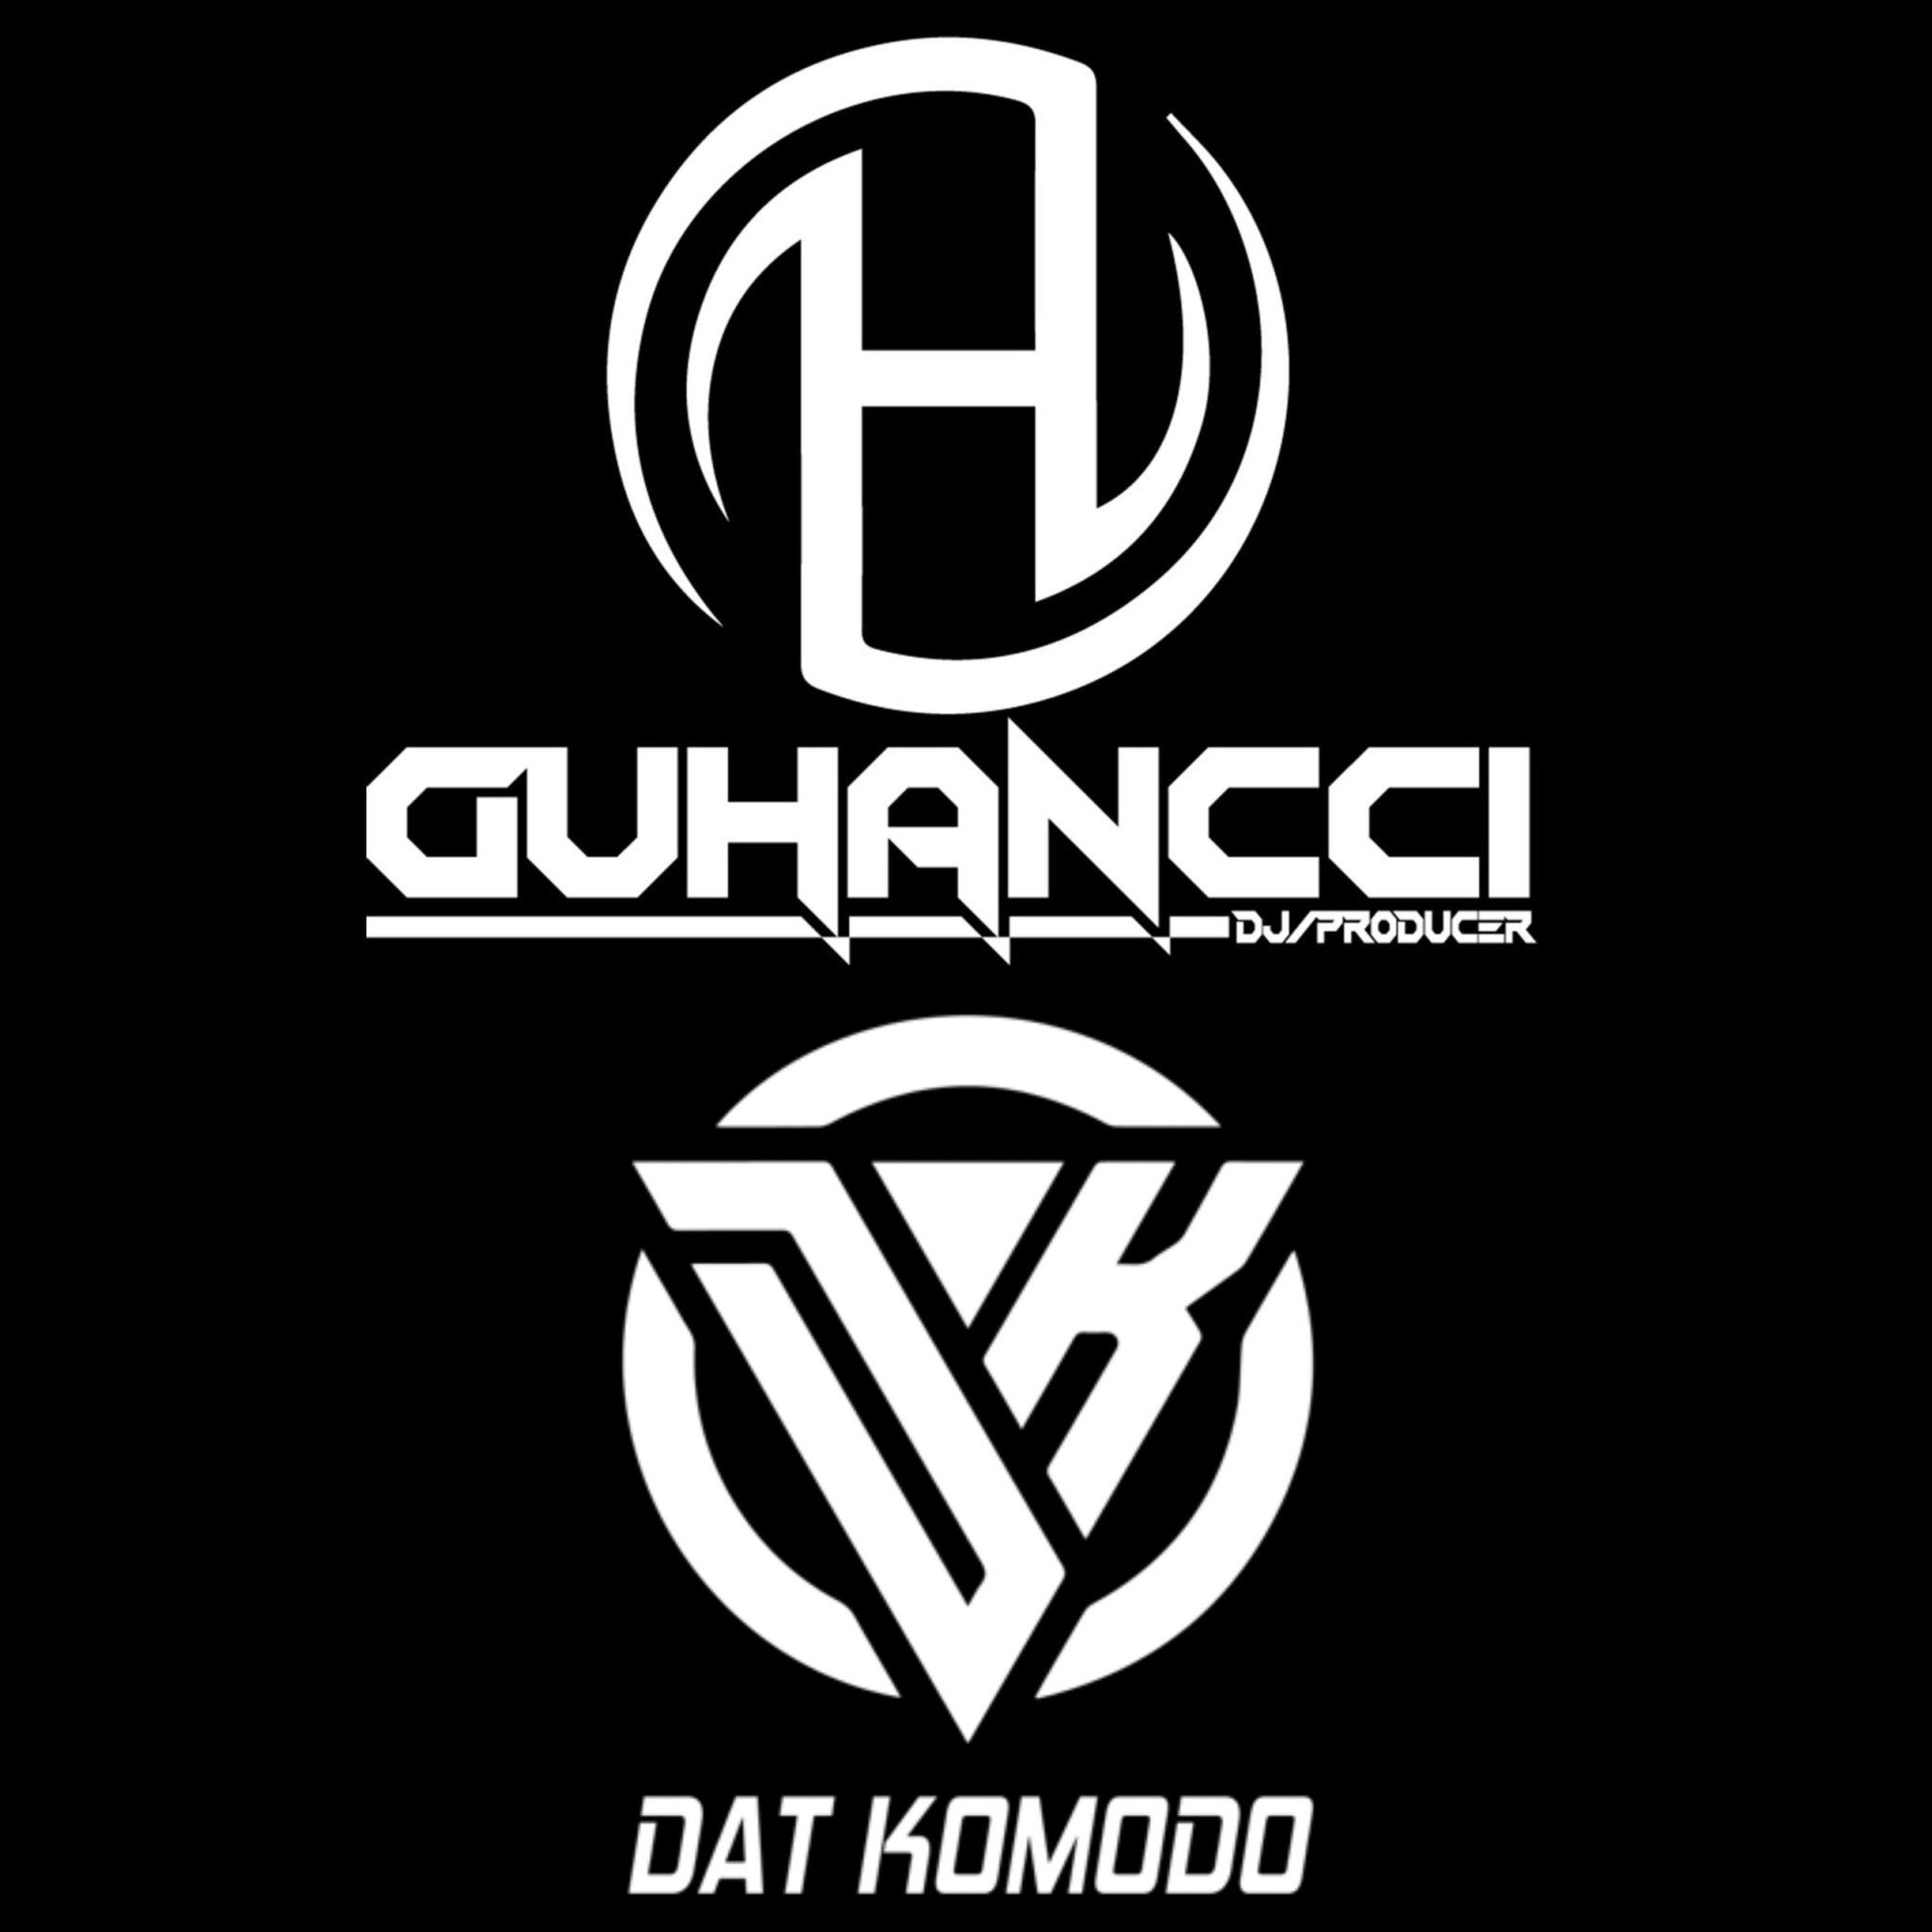 Preuzimanje datoteka Express Music - DatKomodo ft guHancci (guHancci Team)